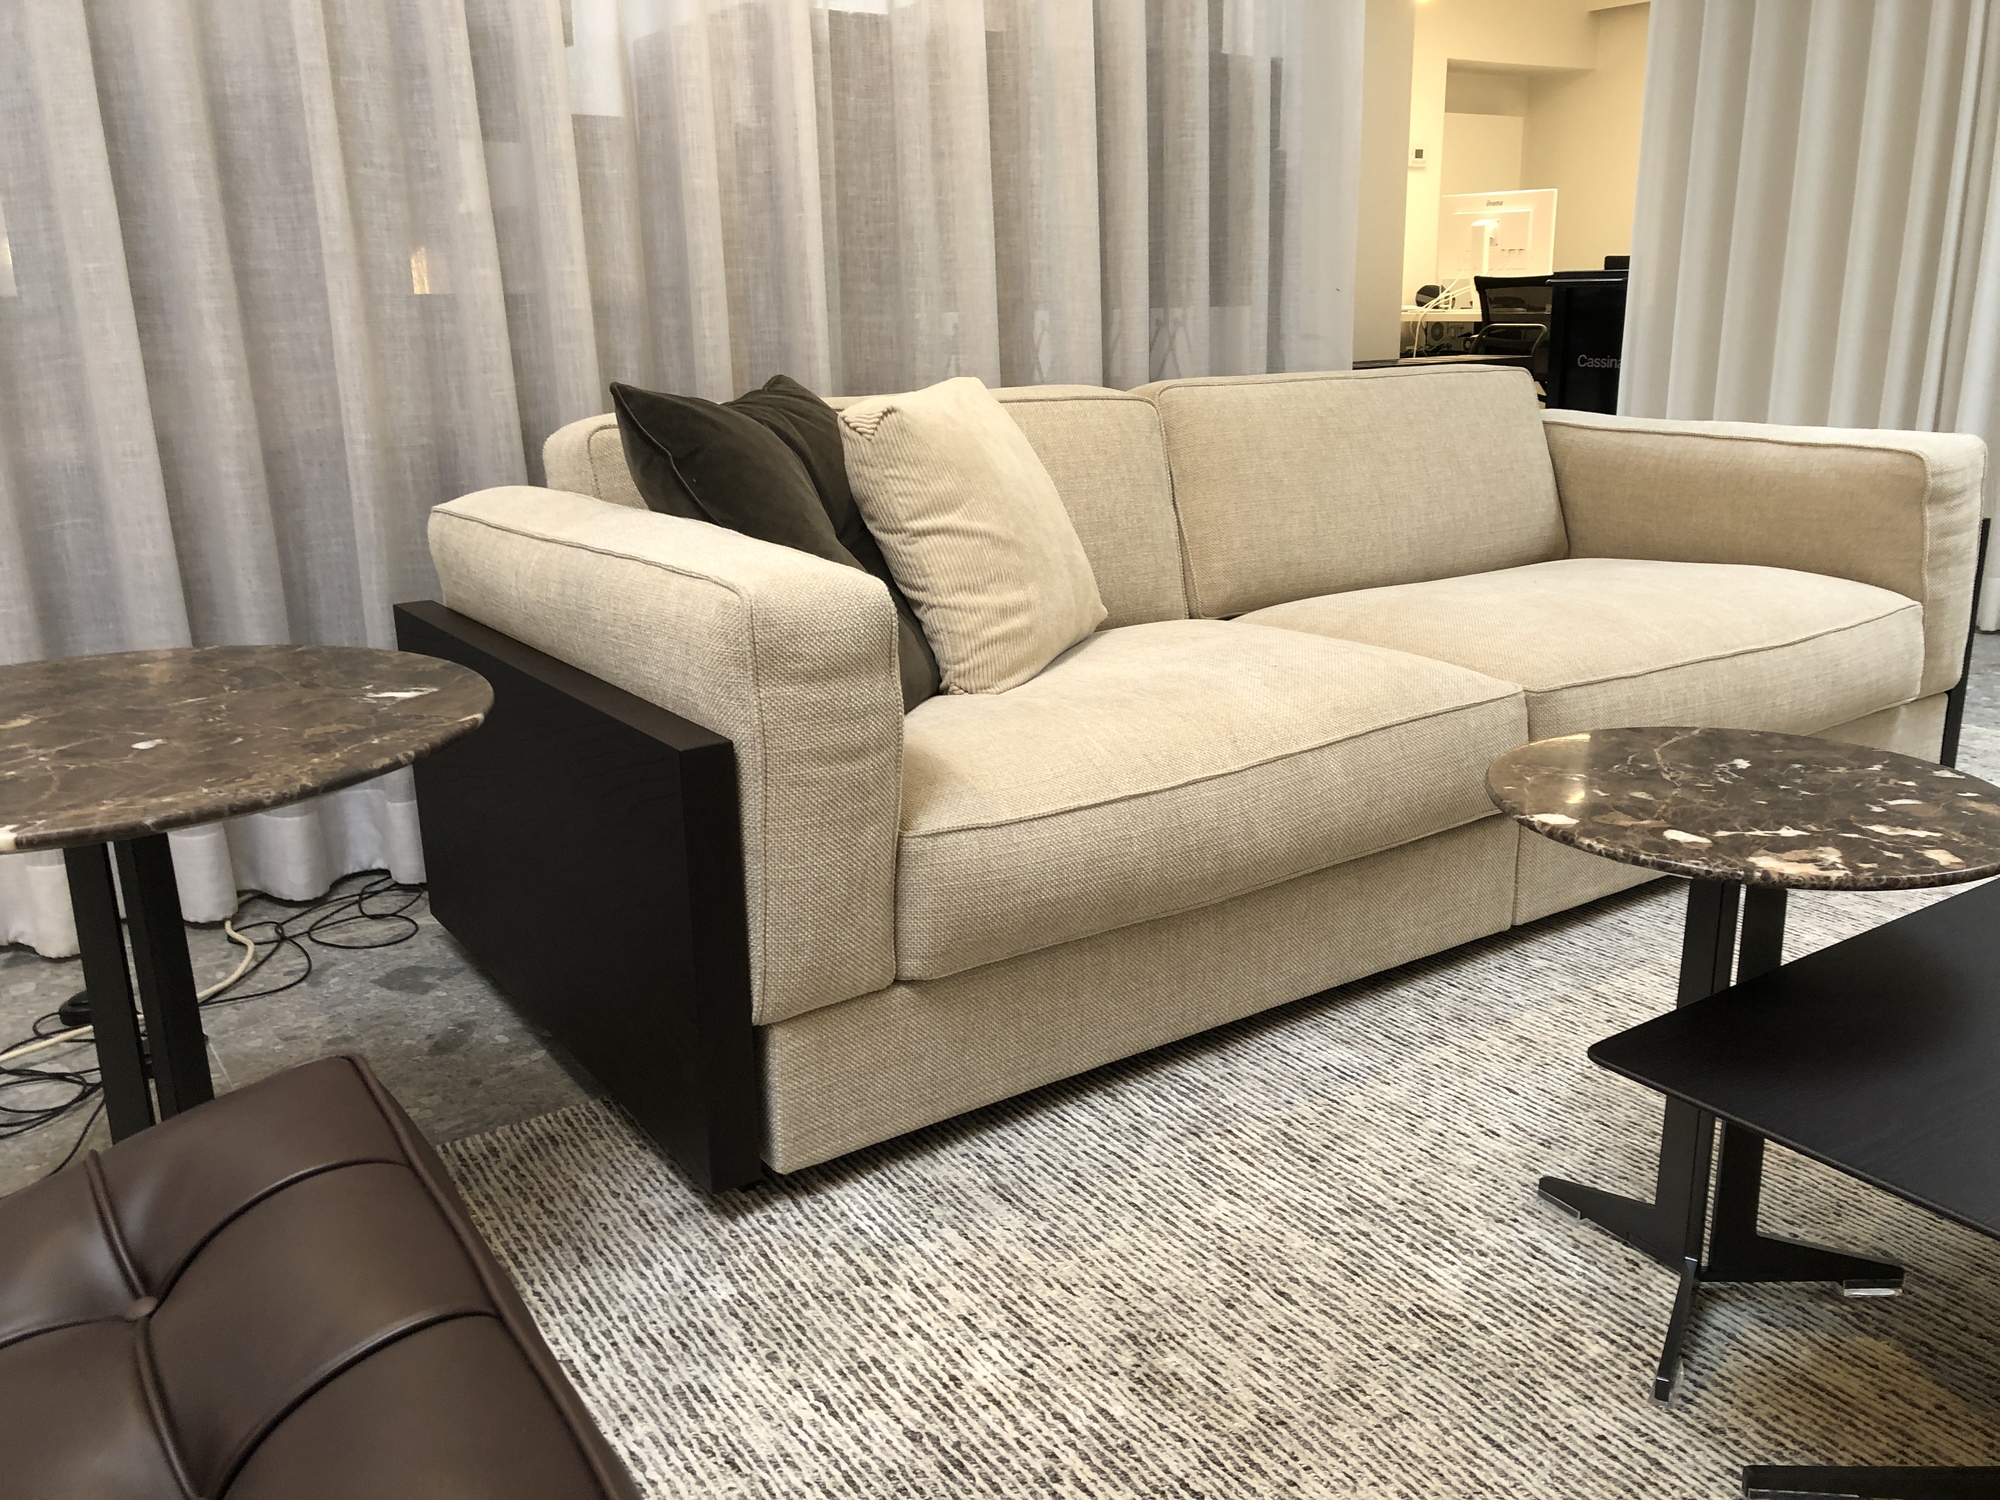 Knoll-Gould sofa